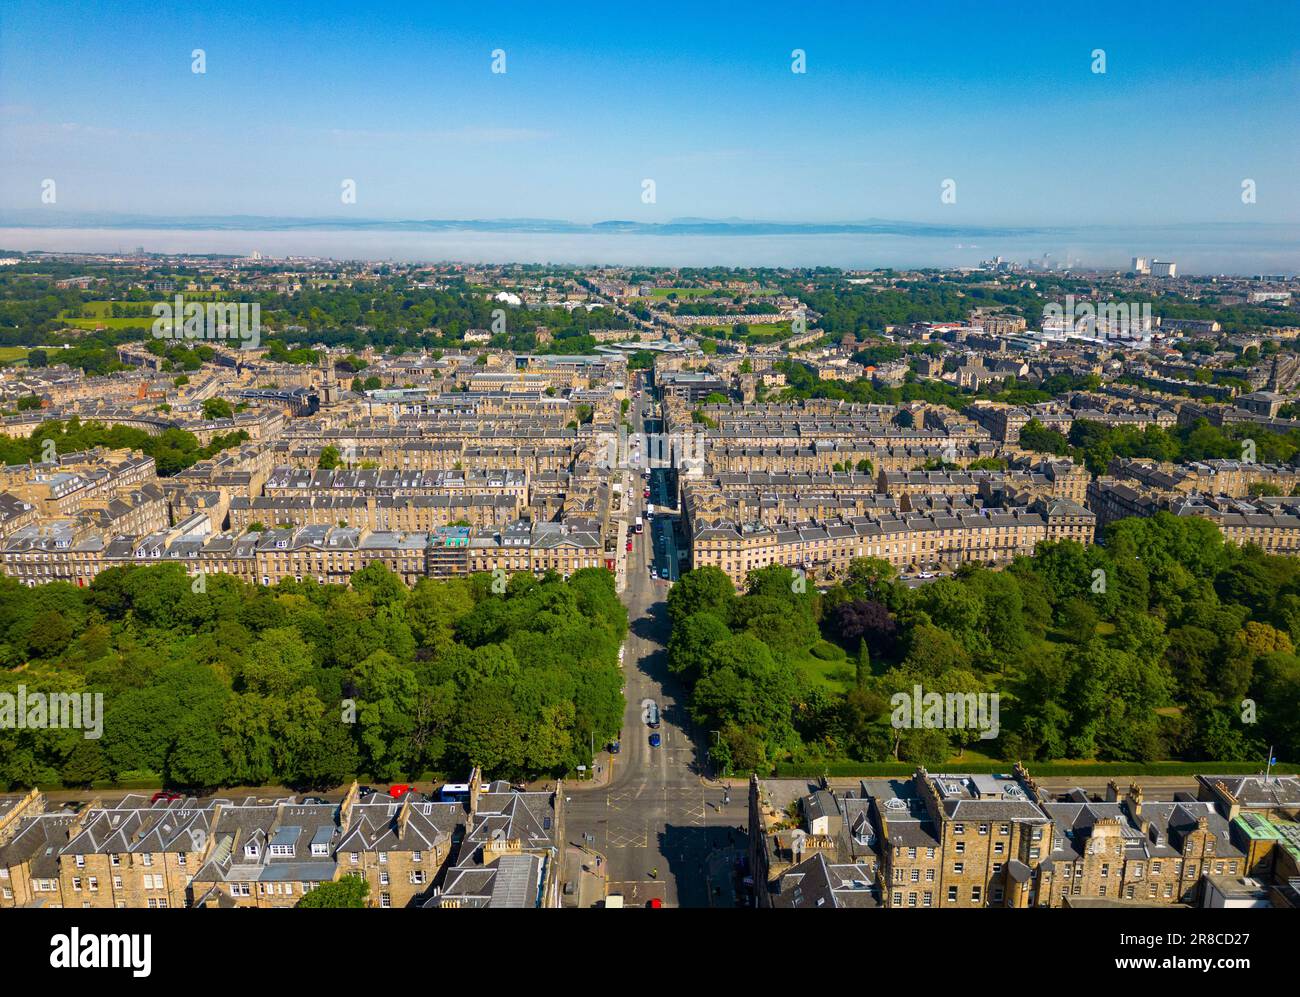 Vue aérienne de la Nouvelle ville, site classé au patrimoine mondial de l'UNESCO à Édimbourg, en Écosse, au Royaume-Uni Banque D'Images